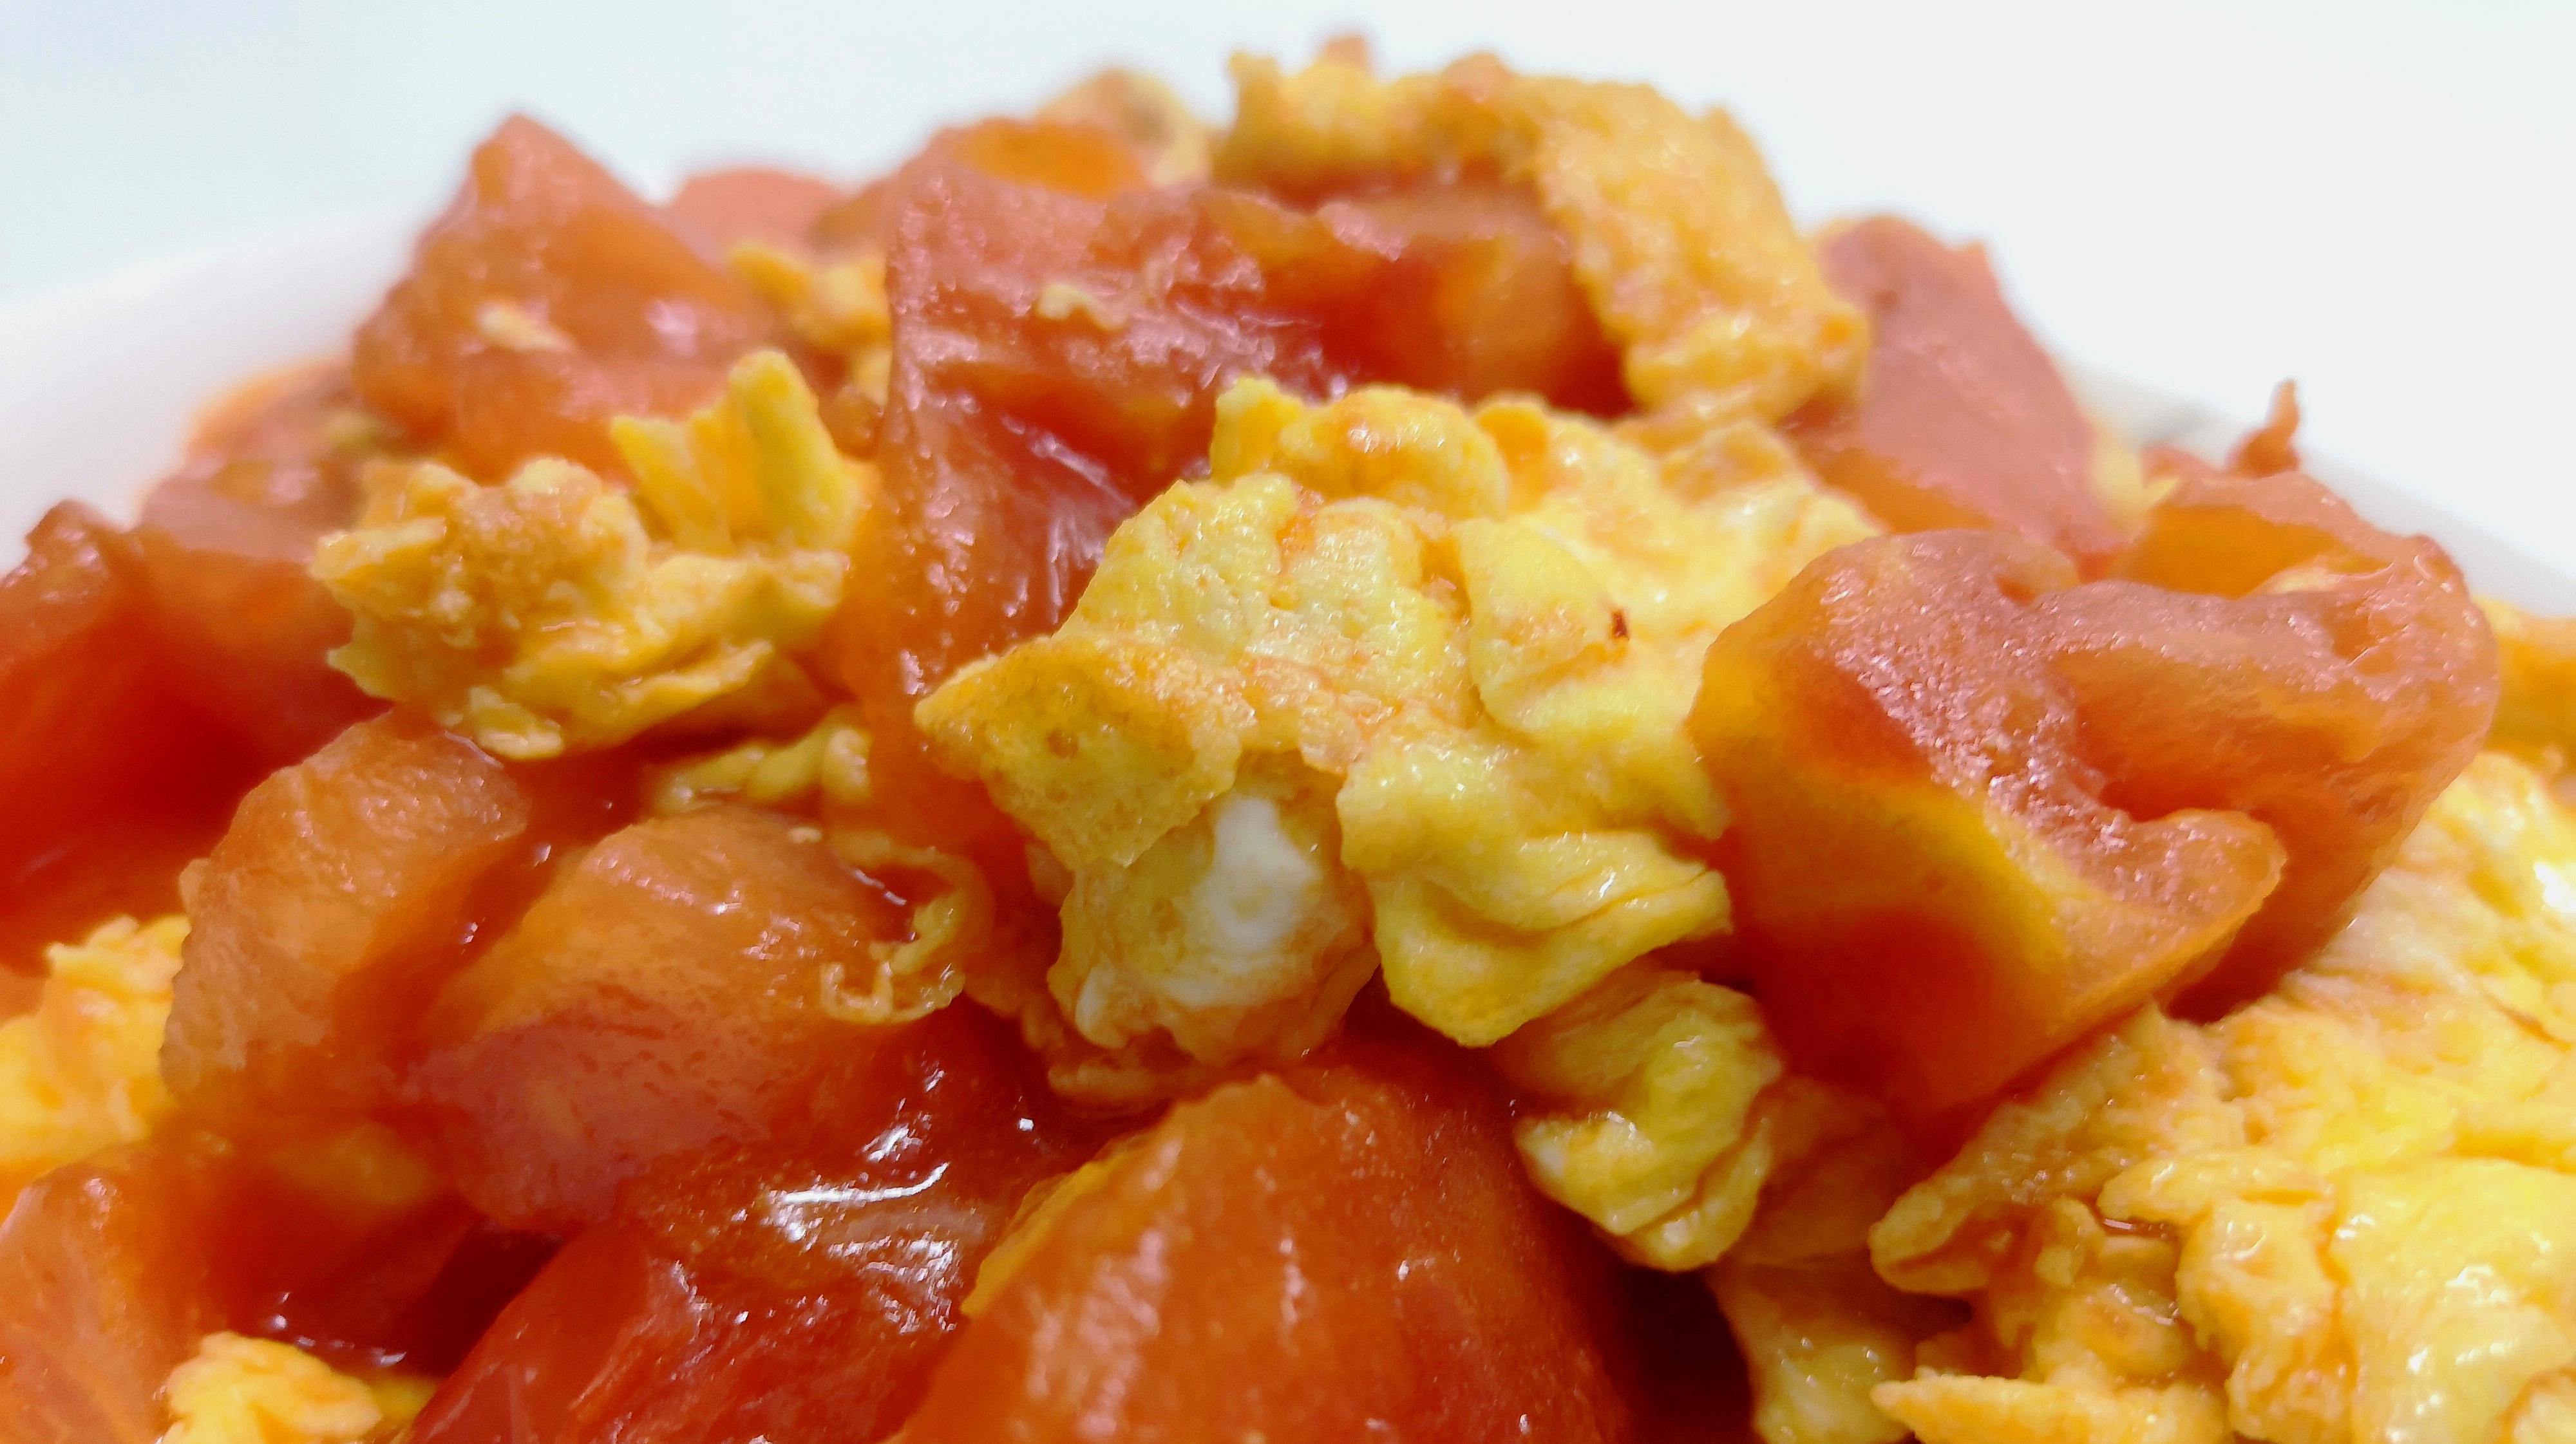 3西红柿炒鸡蛋:西红柿洗净切块,碗中打入鸡蛋加几滴白醋,起锅烧油倒入